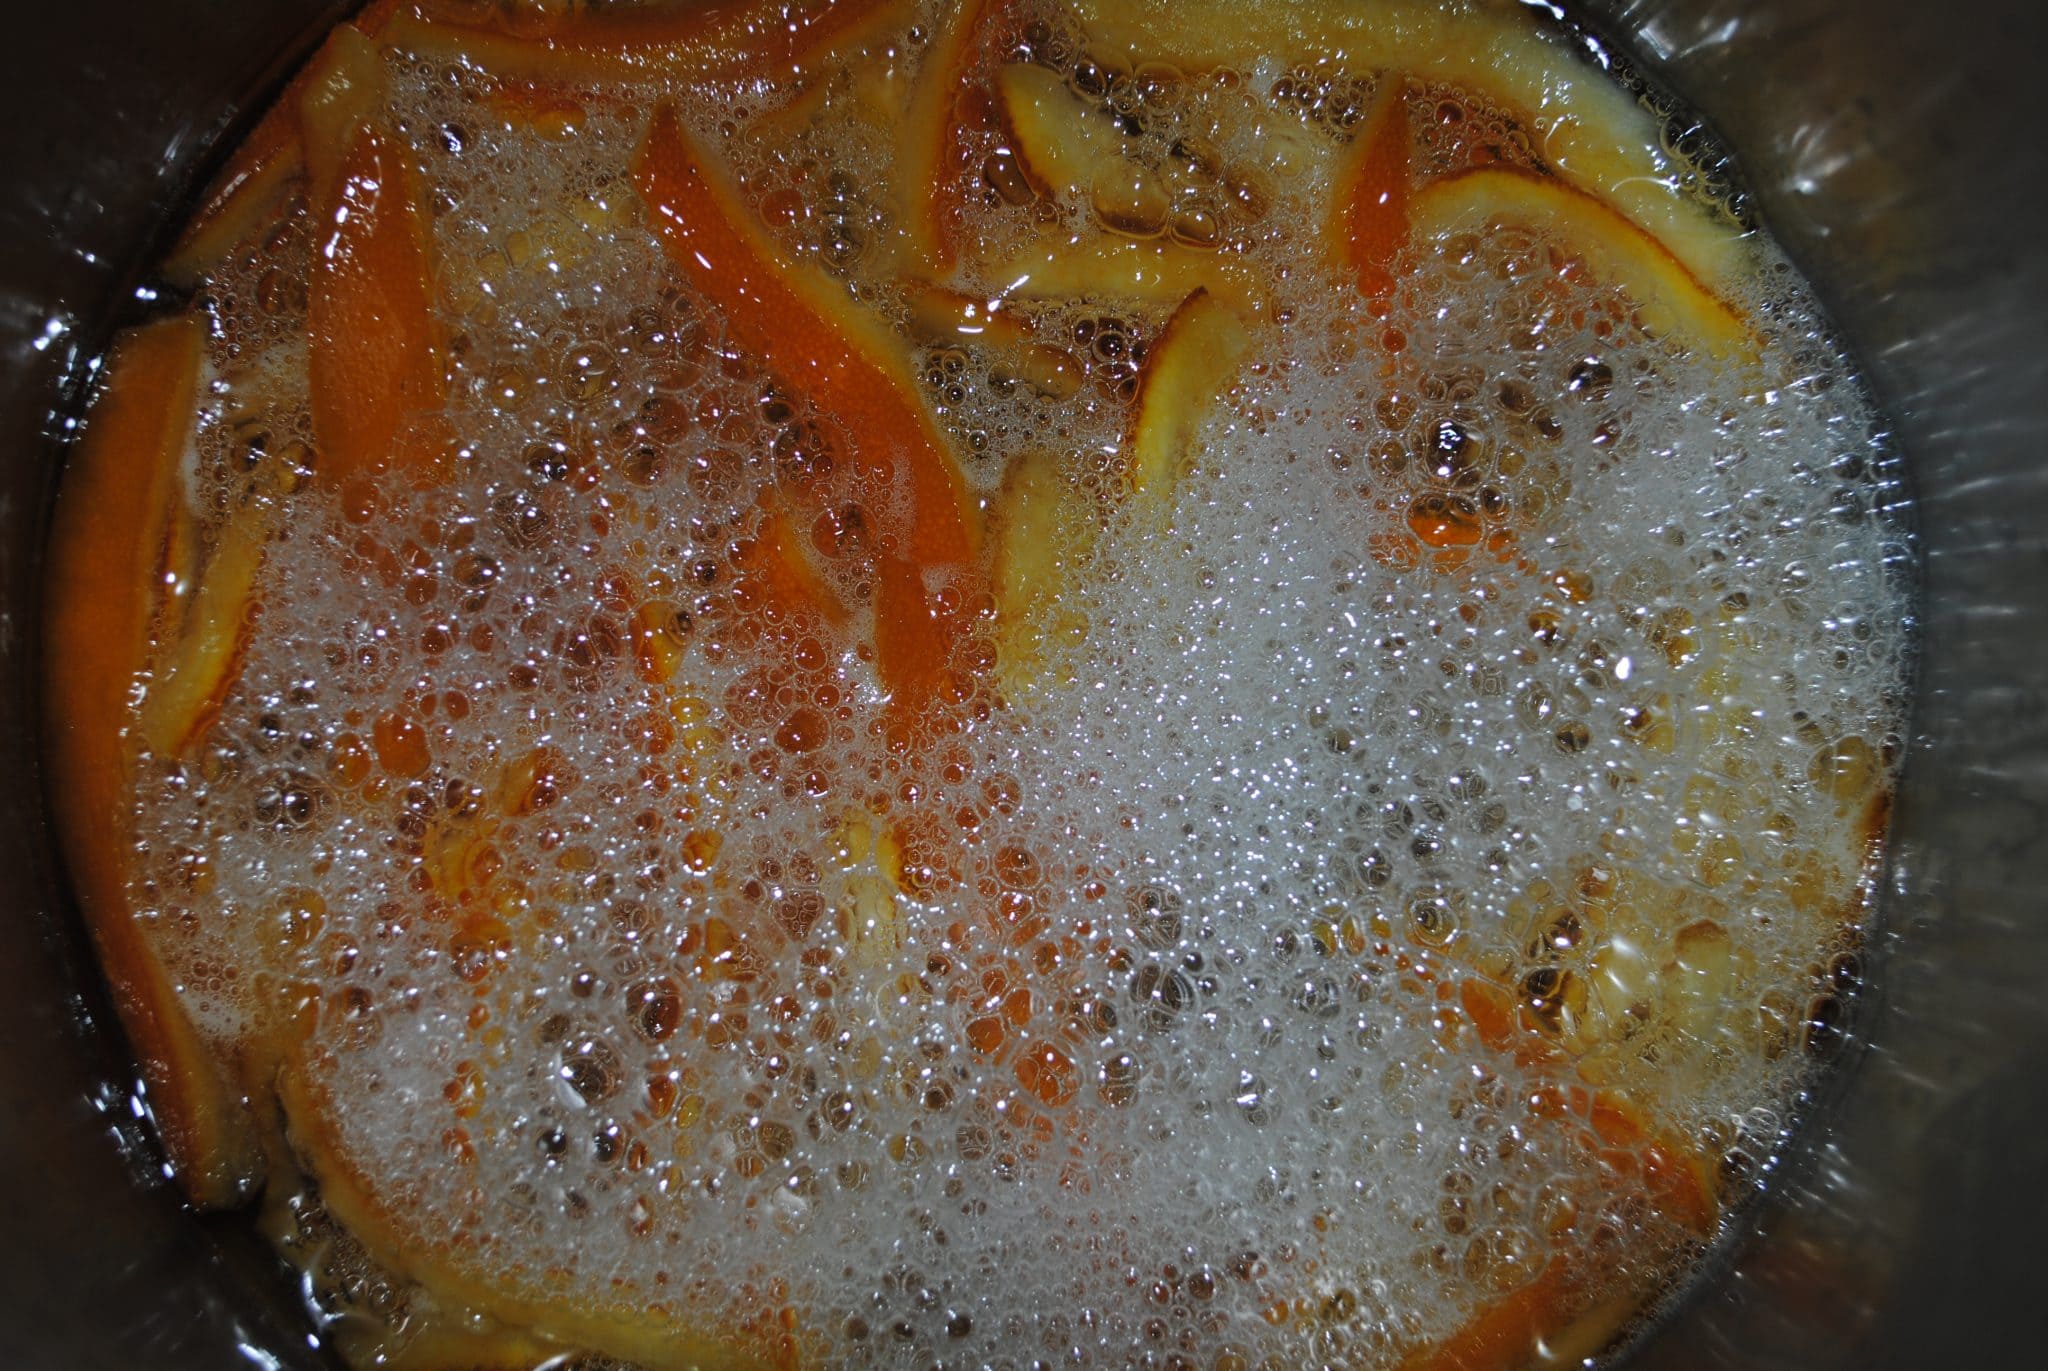 Orange zest slices being fried.